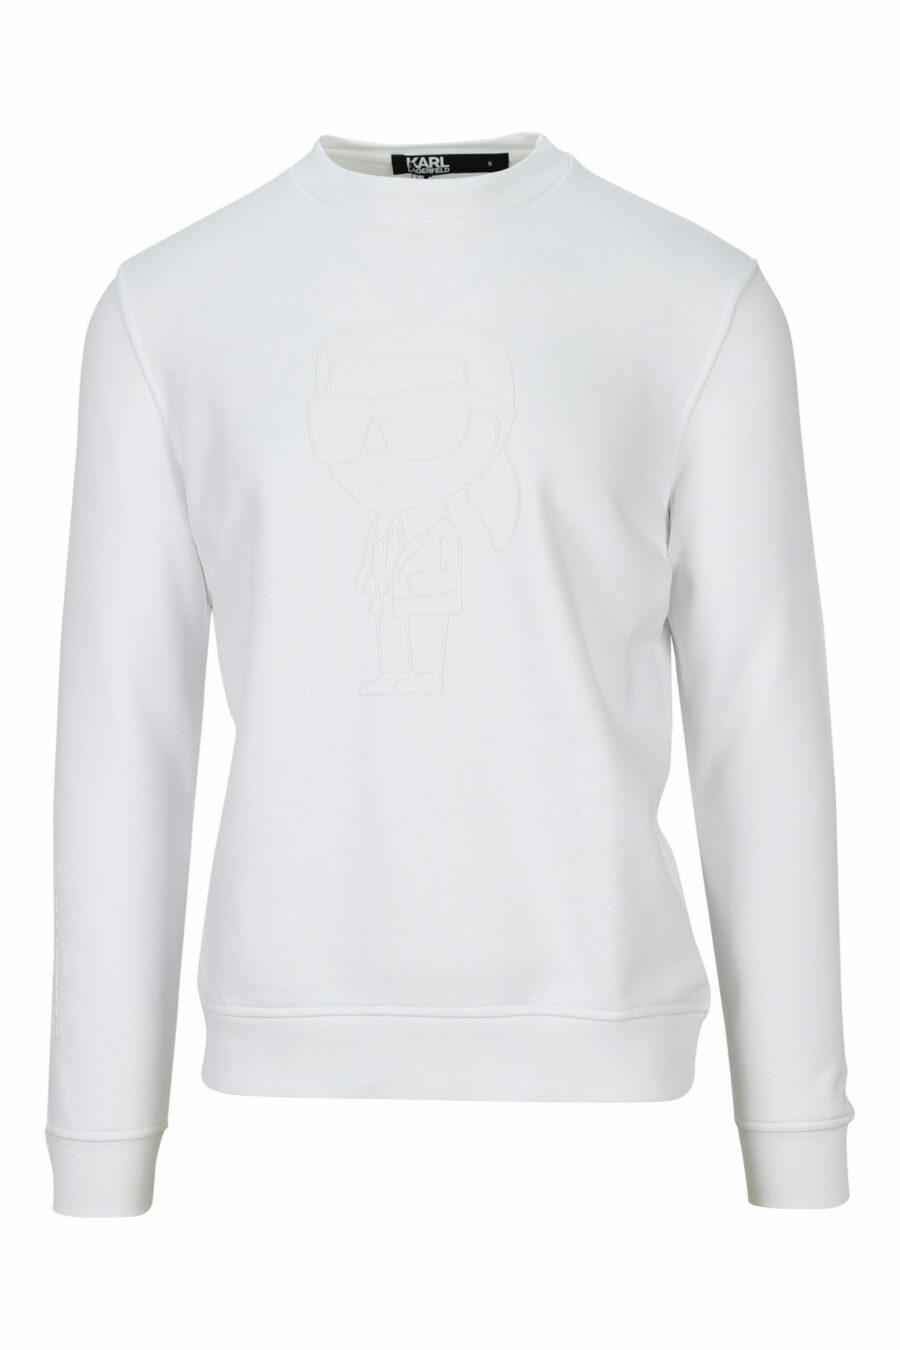 Weißes Sweatshirt mit einfarbig gummiertem Maxilogo - 4062226393010 skaliert